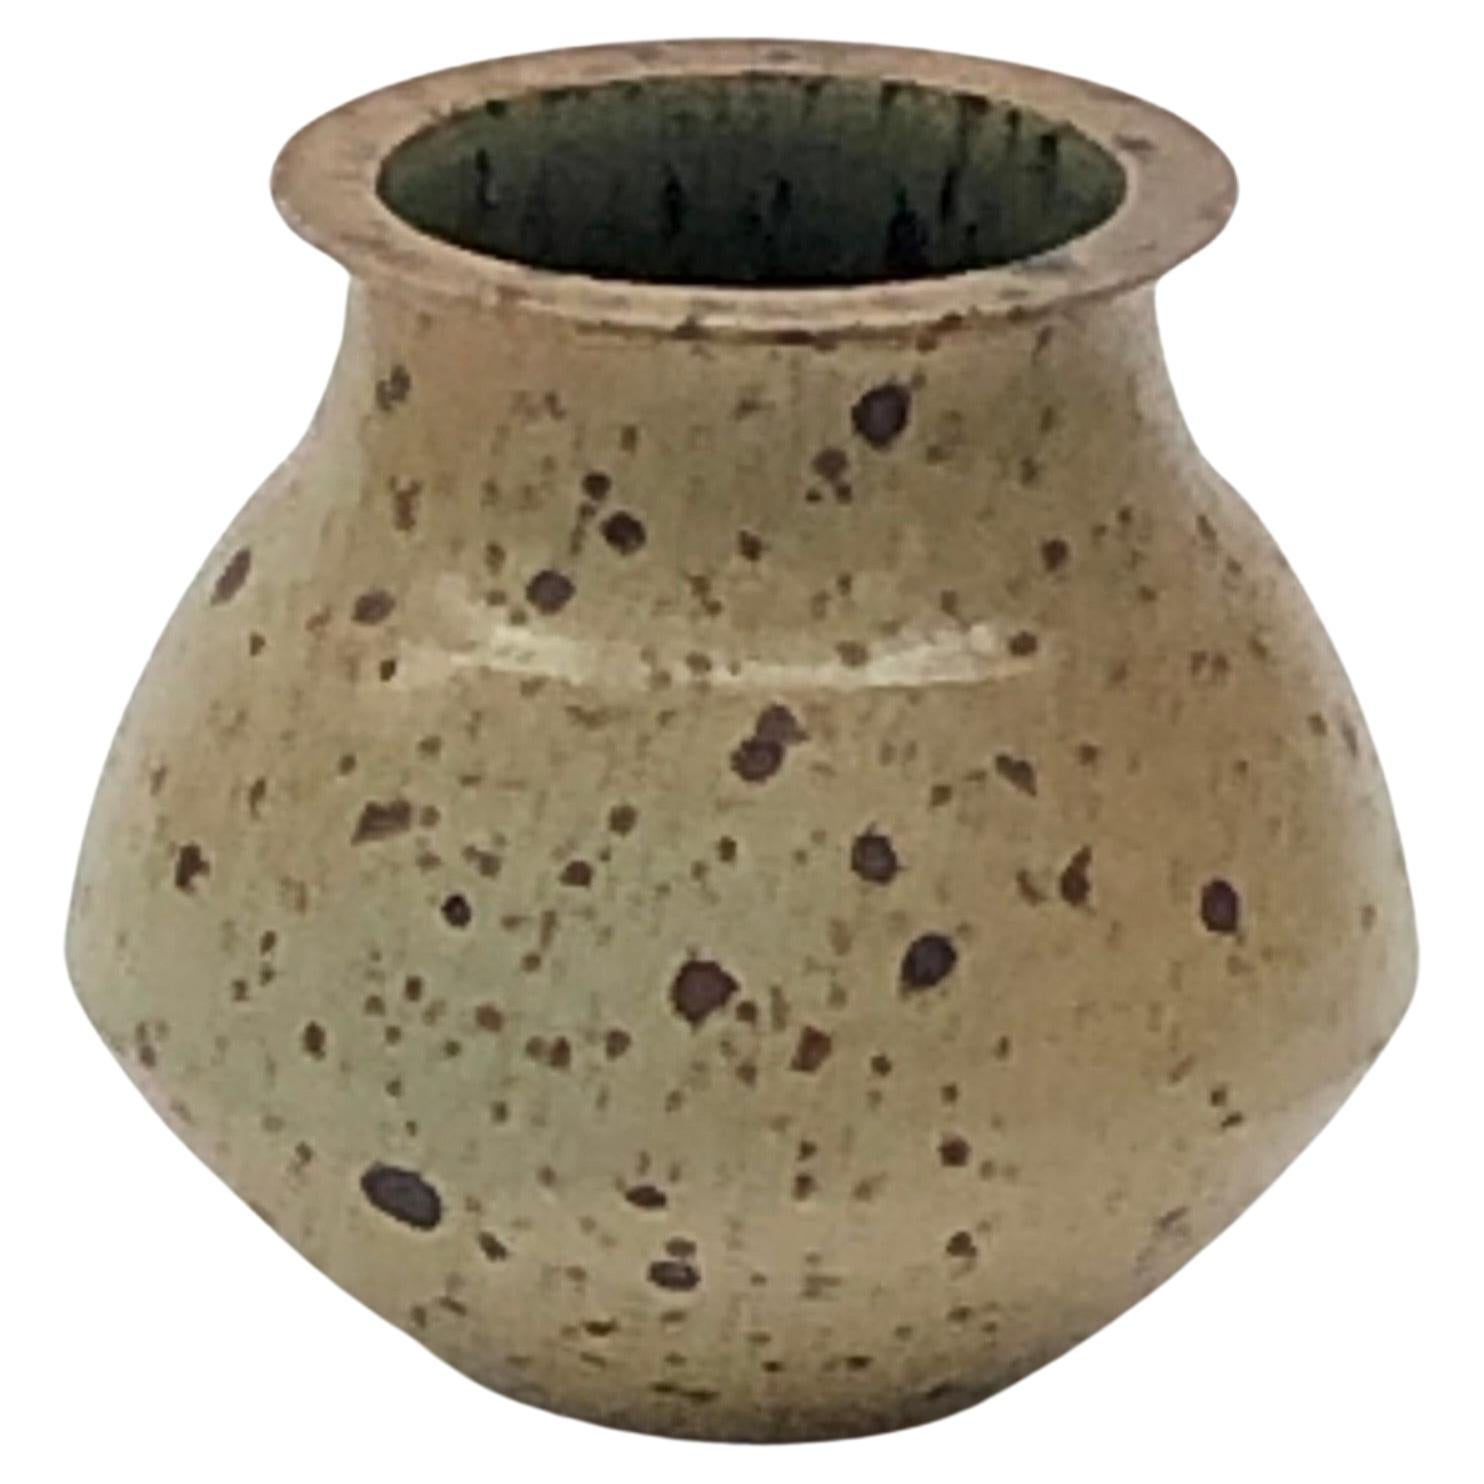 pyrity stoneware vase by Robert Deblander